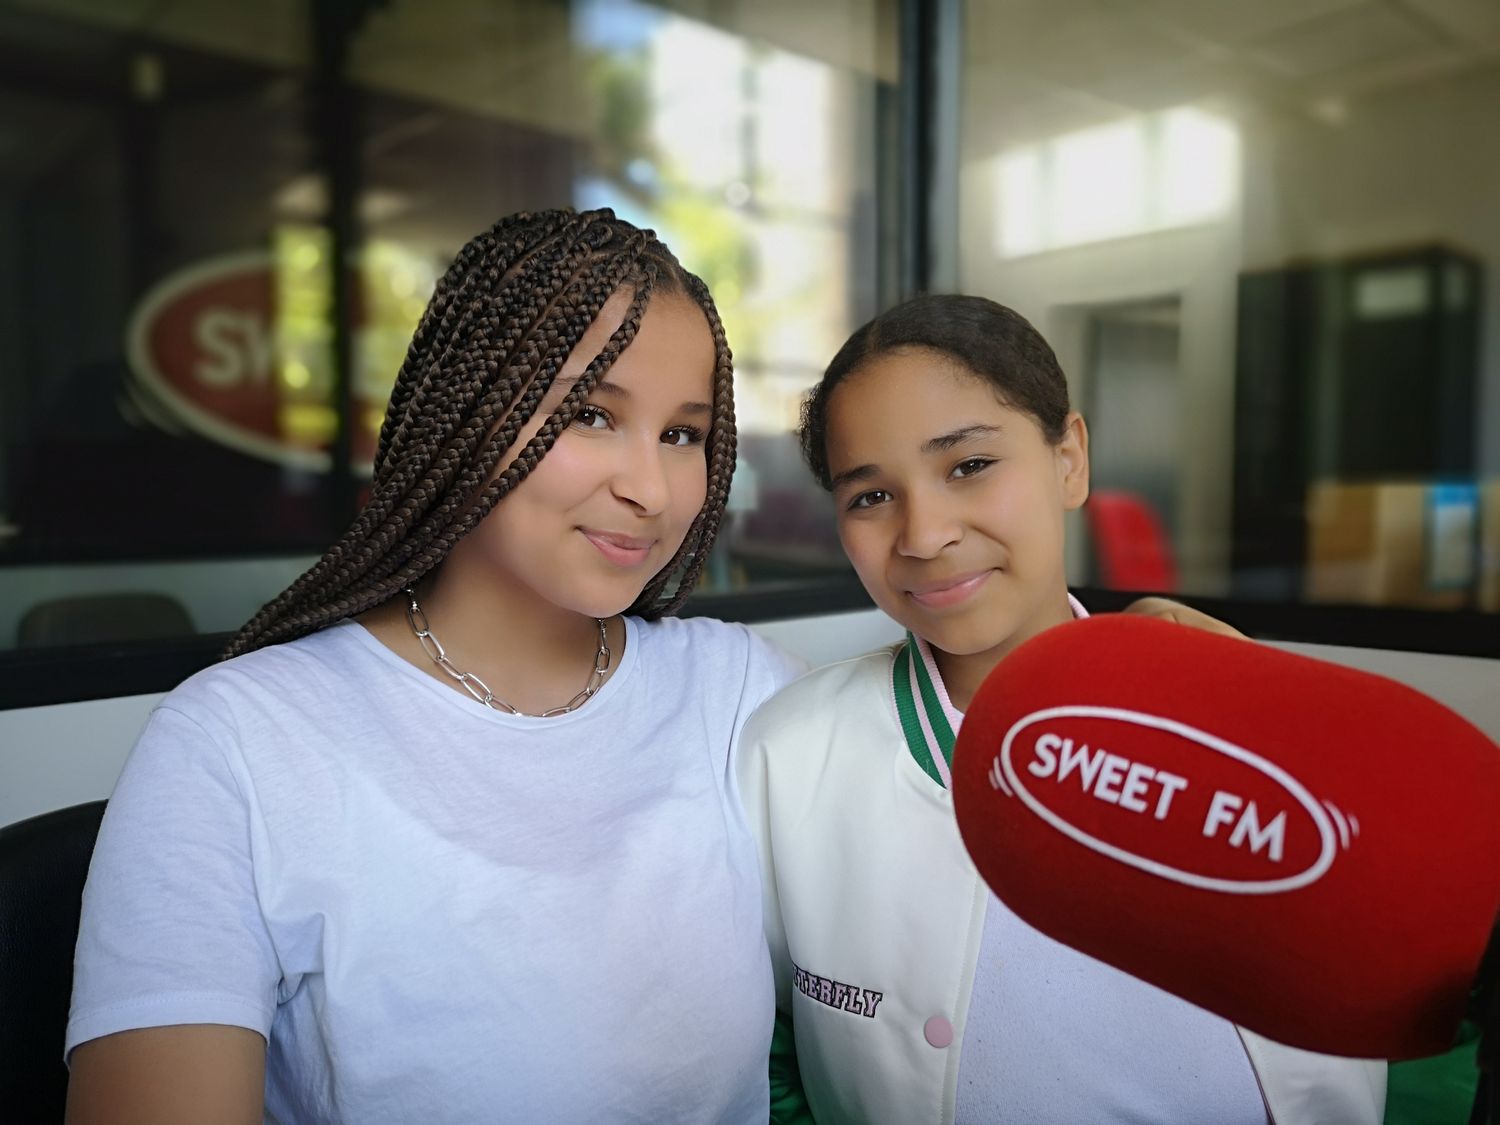 Les blésoises Sara et Rania, 14 et 12 ans, chanteront sur la scène de l'Olympia ce lundi 16 mai.